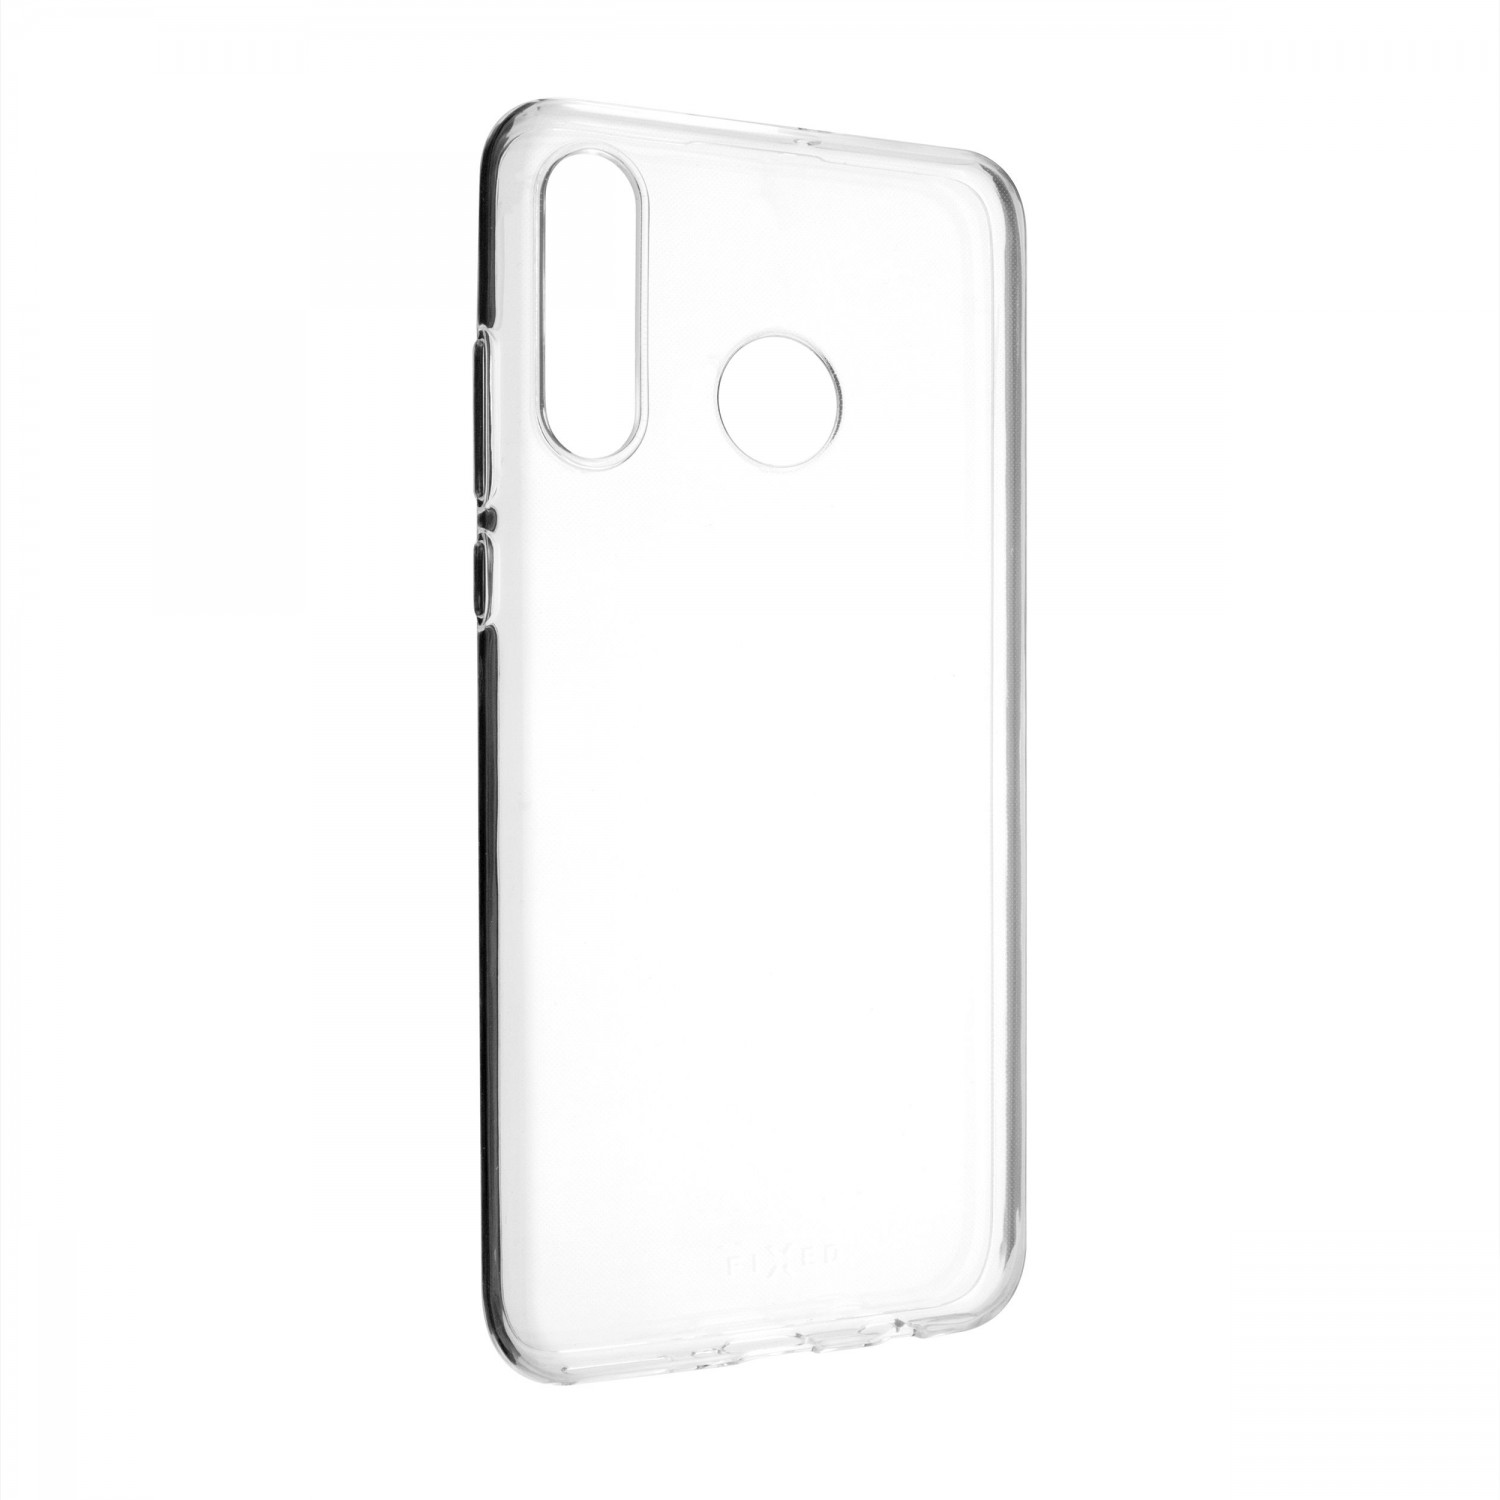 Ultratenké silikonové pouzdro FIXED Skin pro Huawei P30 Lite, transparentní